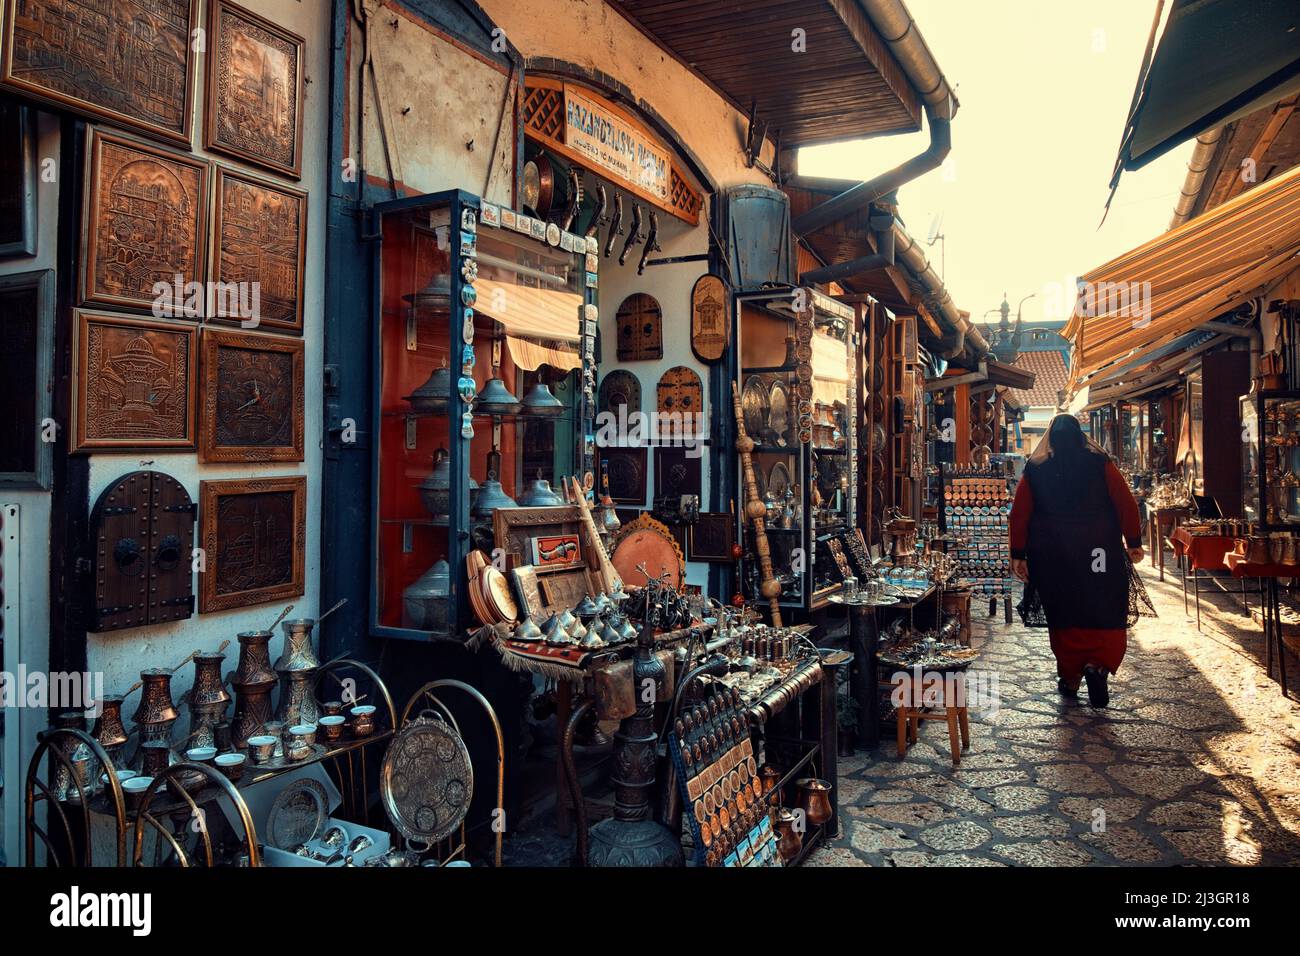 SARAJEVO, BOSNIA AND HERZEGOVINA - JULY 14, 2018: muslim woman walking in Old Sarajevo street bazaar Stock Photo